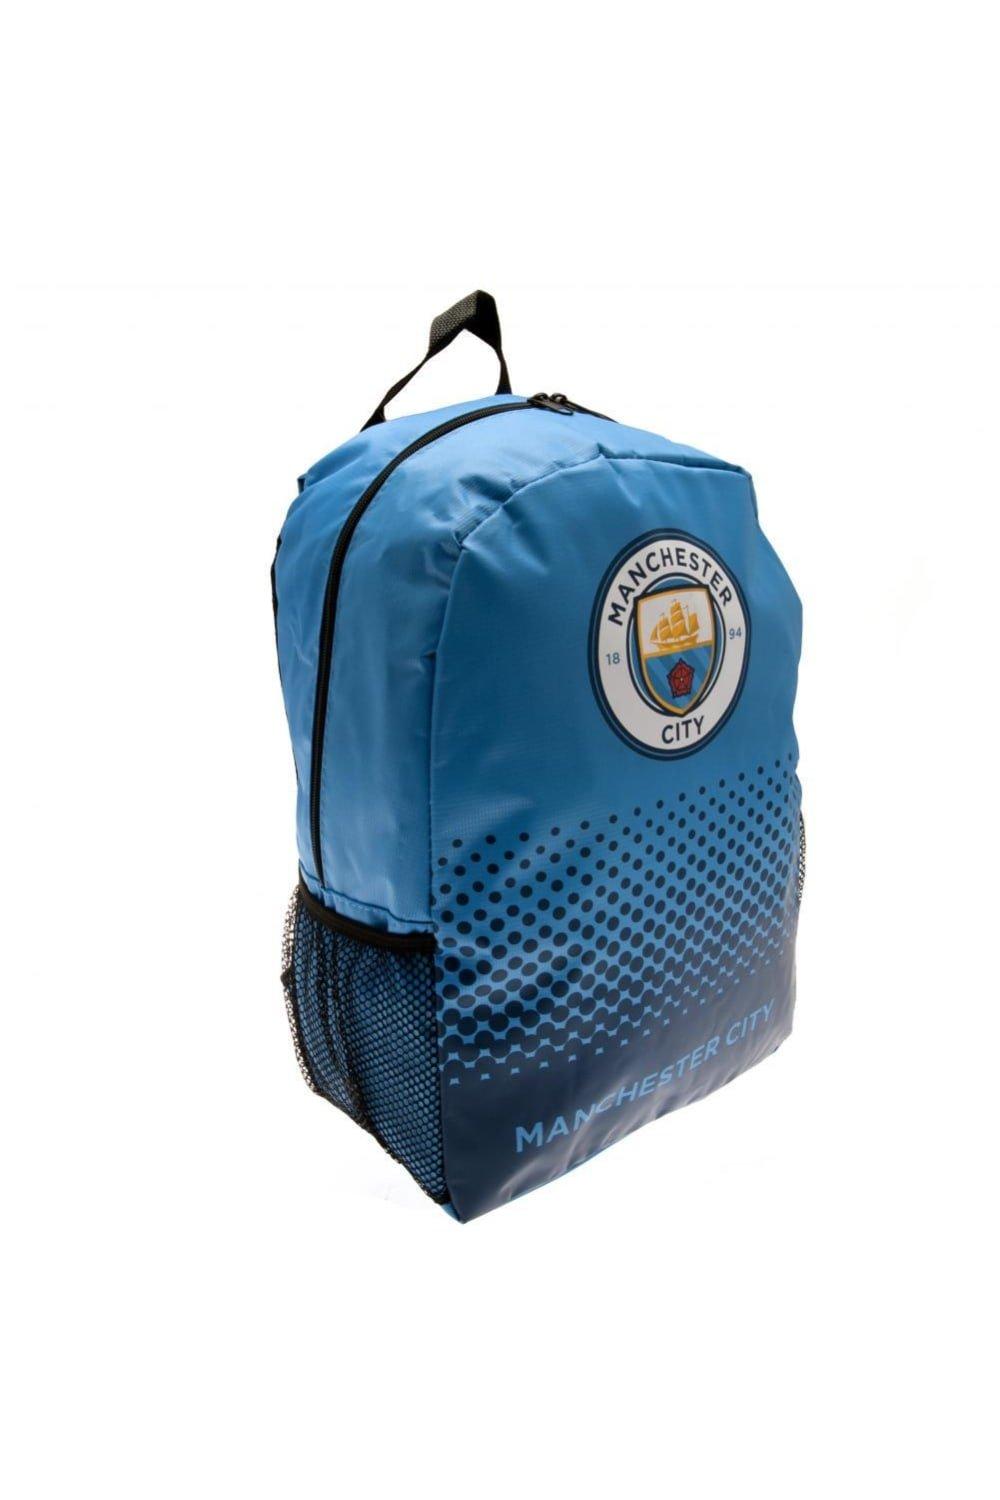 Рюкзак с дизайном Fade Manchester City FC, синий гетры фк манчестер сити 2019 20